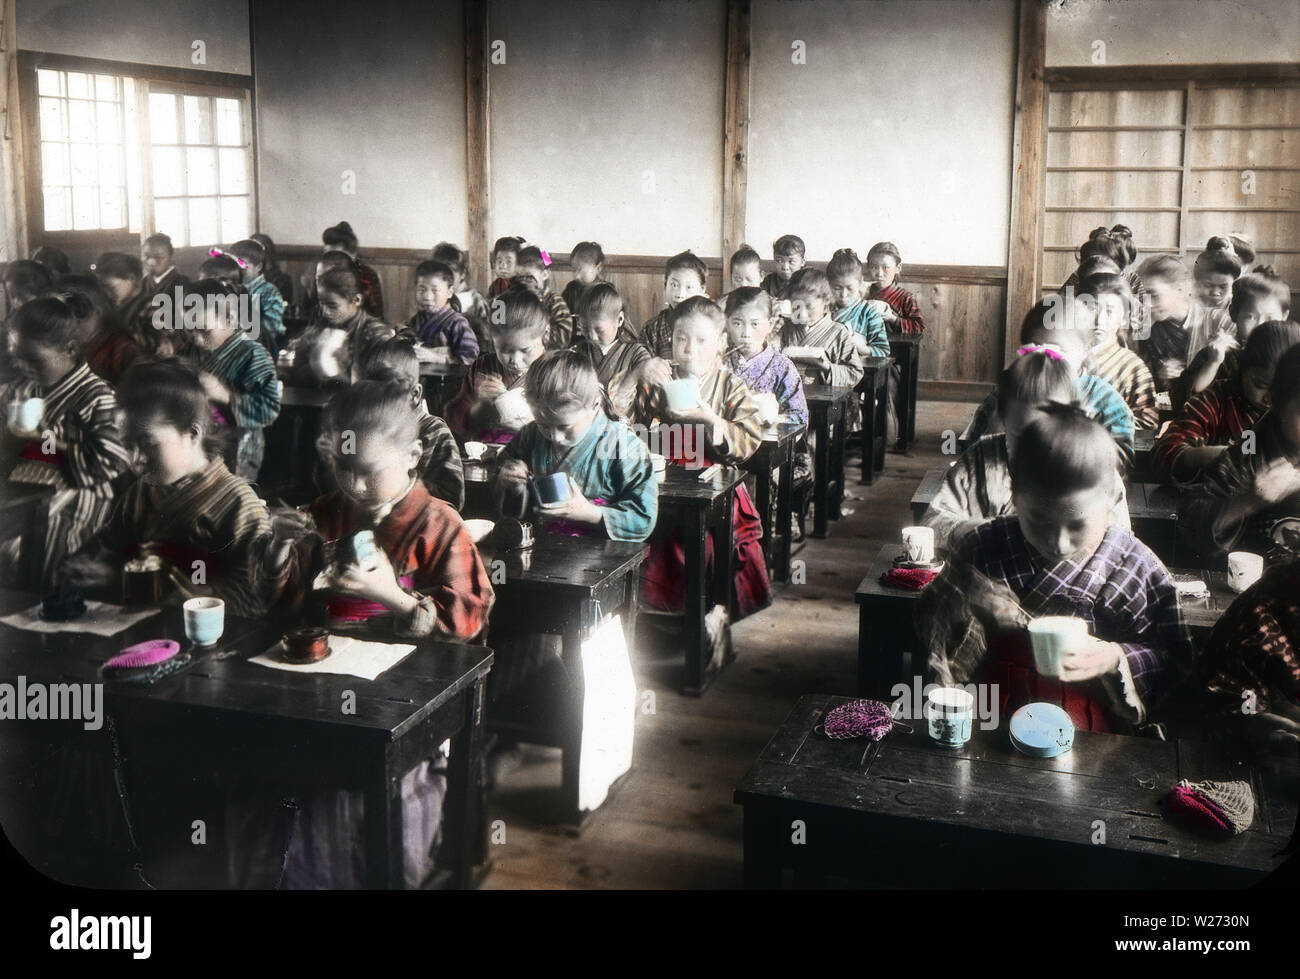 [ 1900 - Japon ] Les élèves de l'école élémentaire des femmes - japonais de l'école élémentaire de manger dans une salle de classe. Cette image fait partie de 'la vie scolaire des jeunes Japon" (n° 9), une série publiée par le photographe japonais Kozaburo Tamamura au début des années 1900 (la fin de l'ère Meiji). 20e siècle vintage lame de verre. Banque D'Images